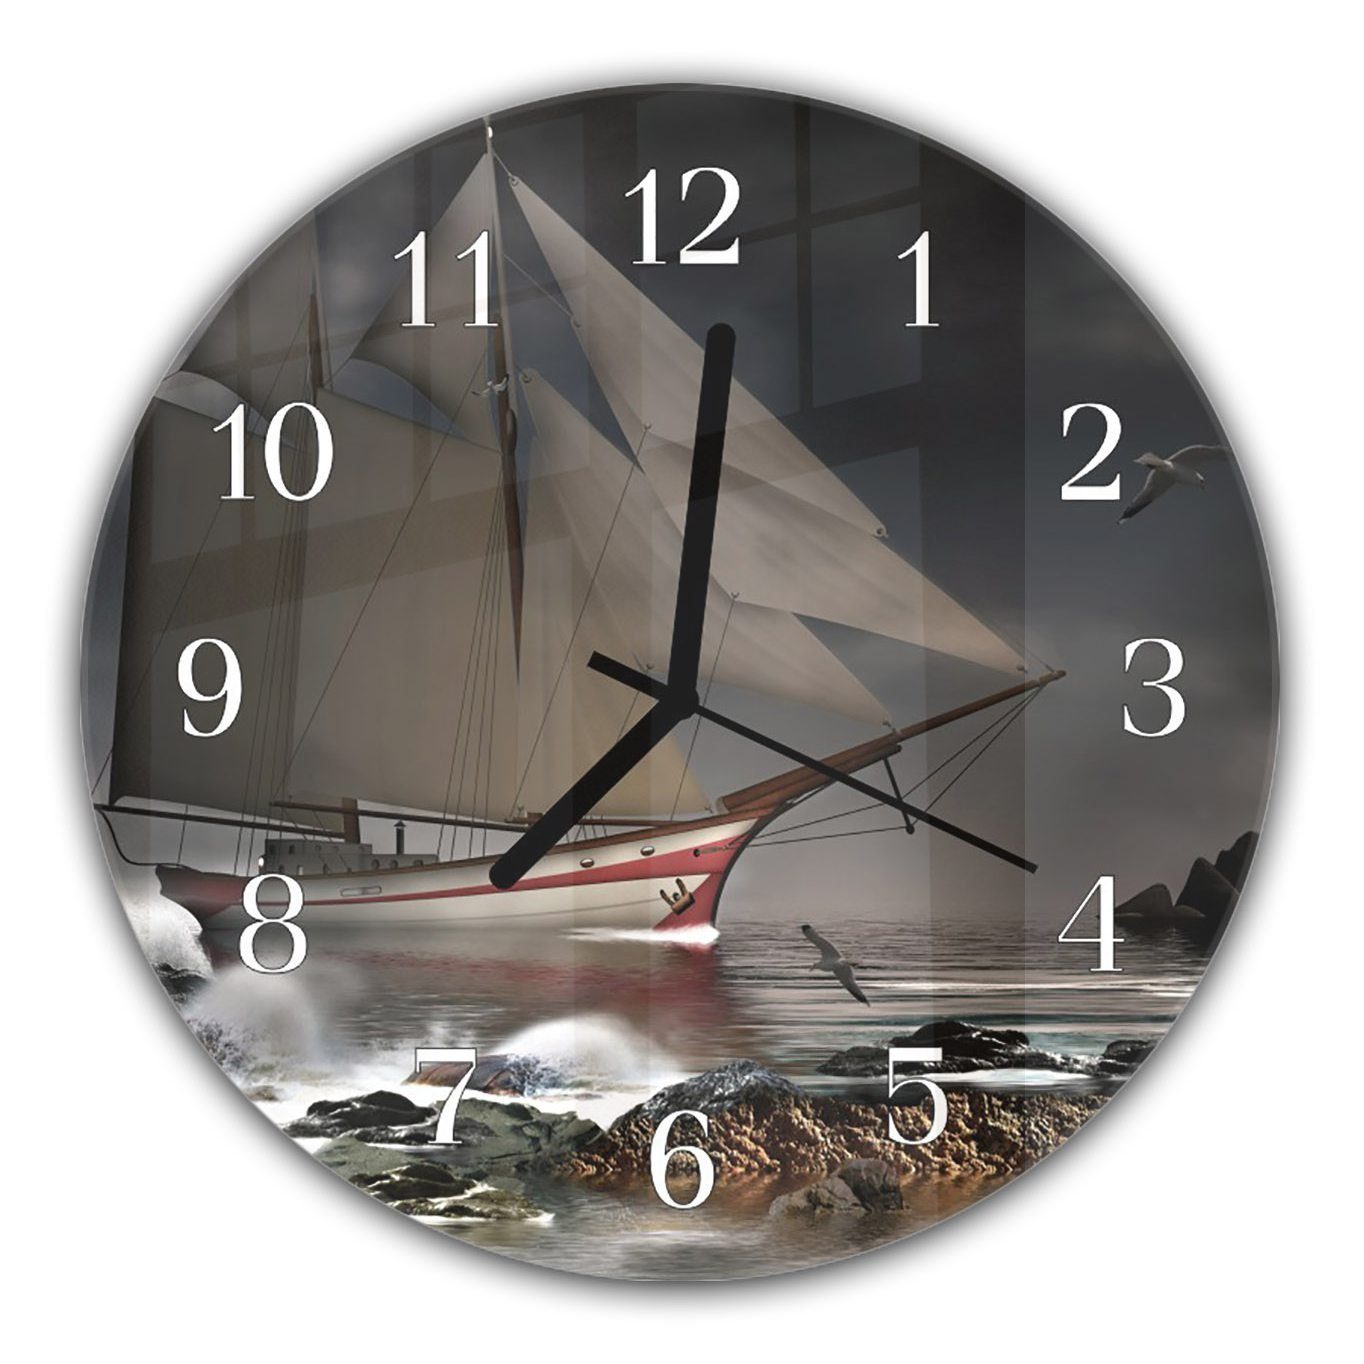 Primedeco Wanduhr Wanduhr aus Glas mit Motiv Selgelschiff auf hoher See - Rund mit Durchmesser 30 cm und Quarzuhrwerk